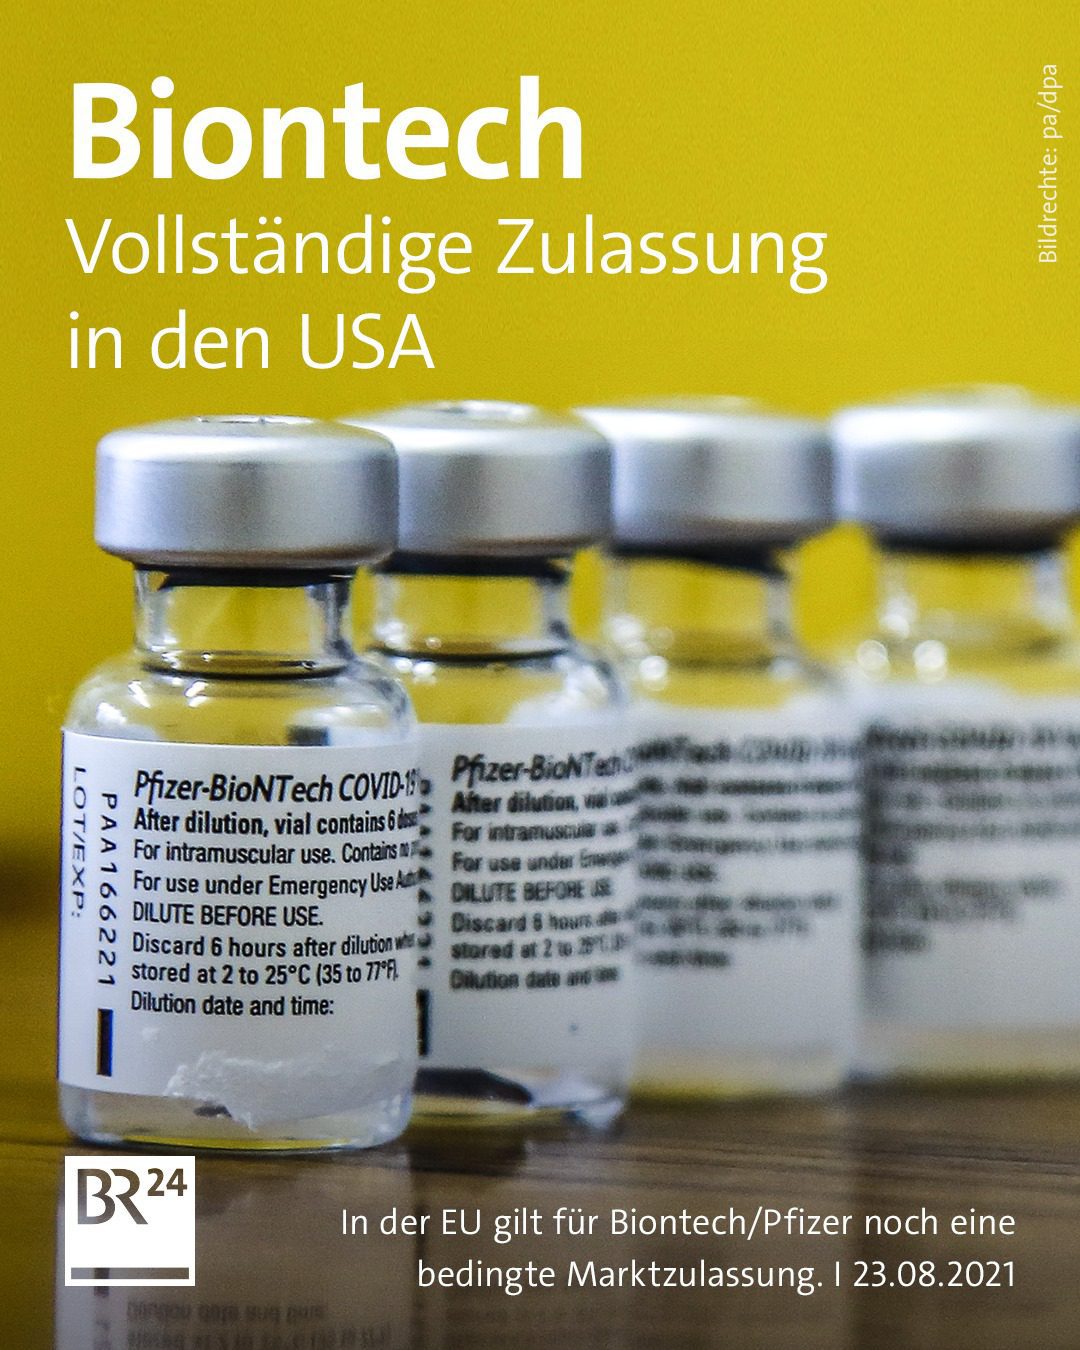 fda-hat-biontech/pfizer-impfstoff-fuer-personen-ab-16-jahren-„zugelassen“